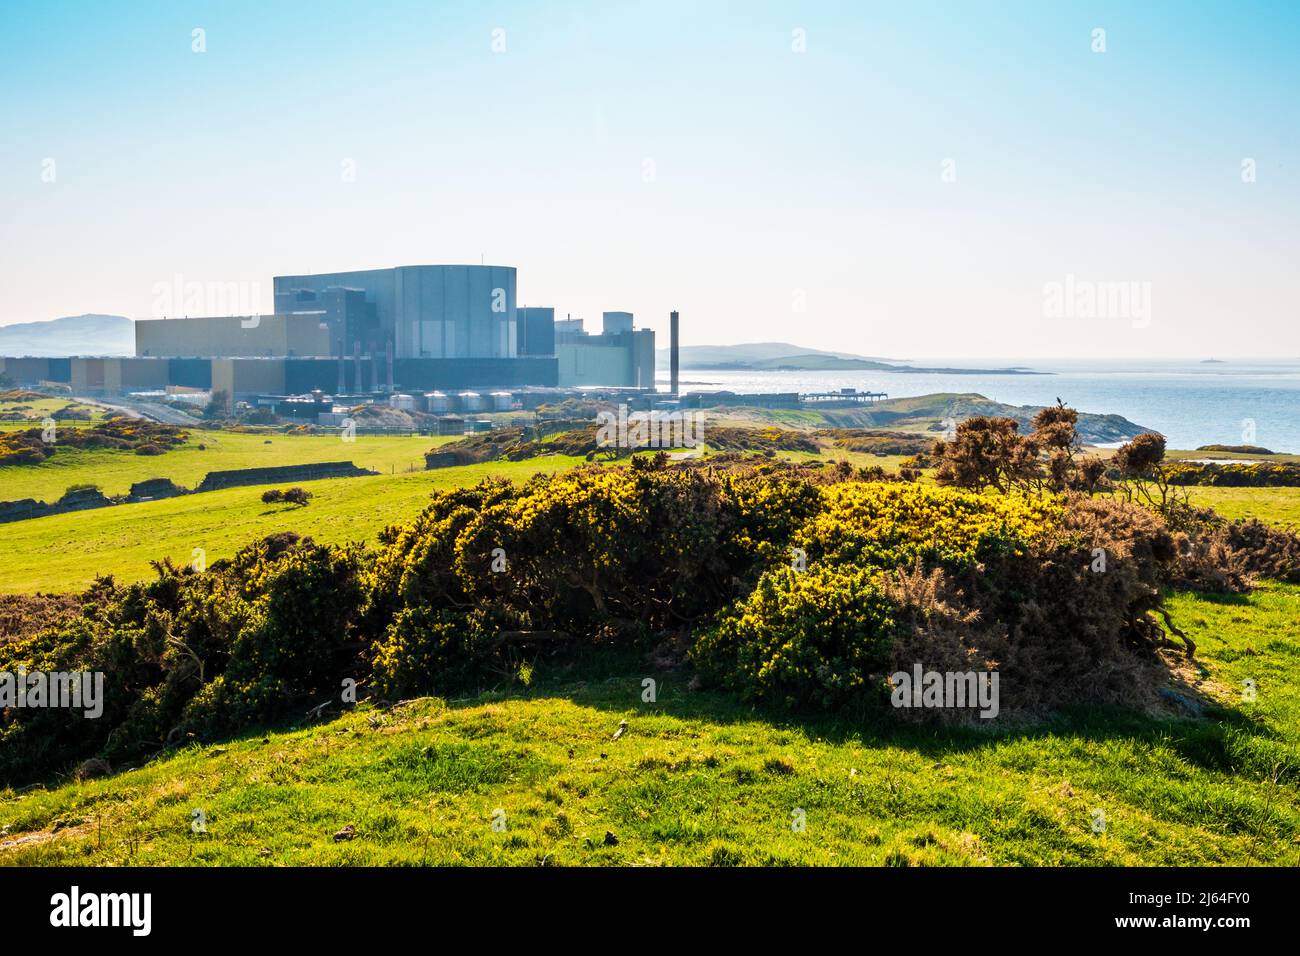 La central nuclear de Wylfa en Anglesey, al norte de Gales, es una central nuclear de Magnox que actualmente está siendo desmantelada Foto de stock